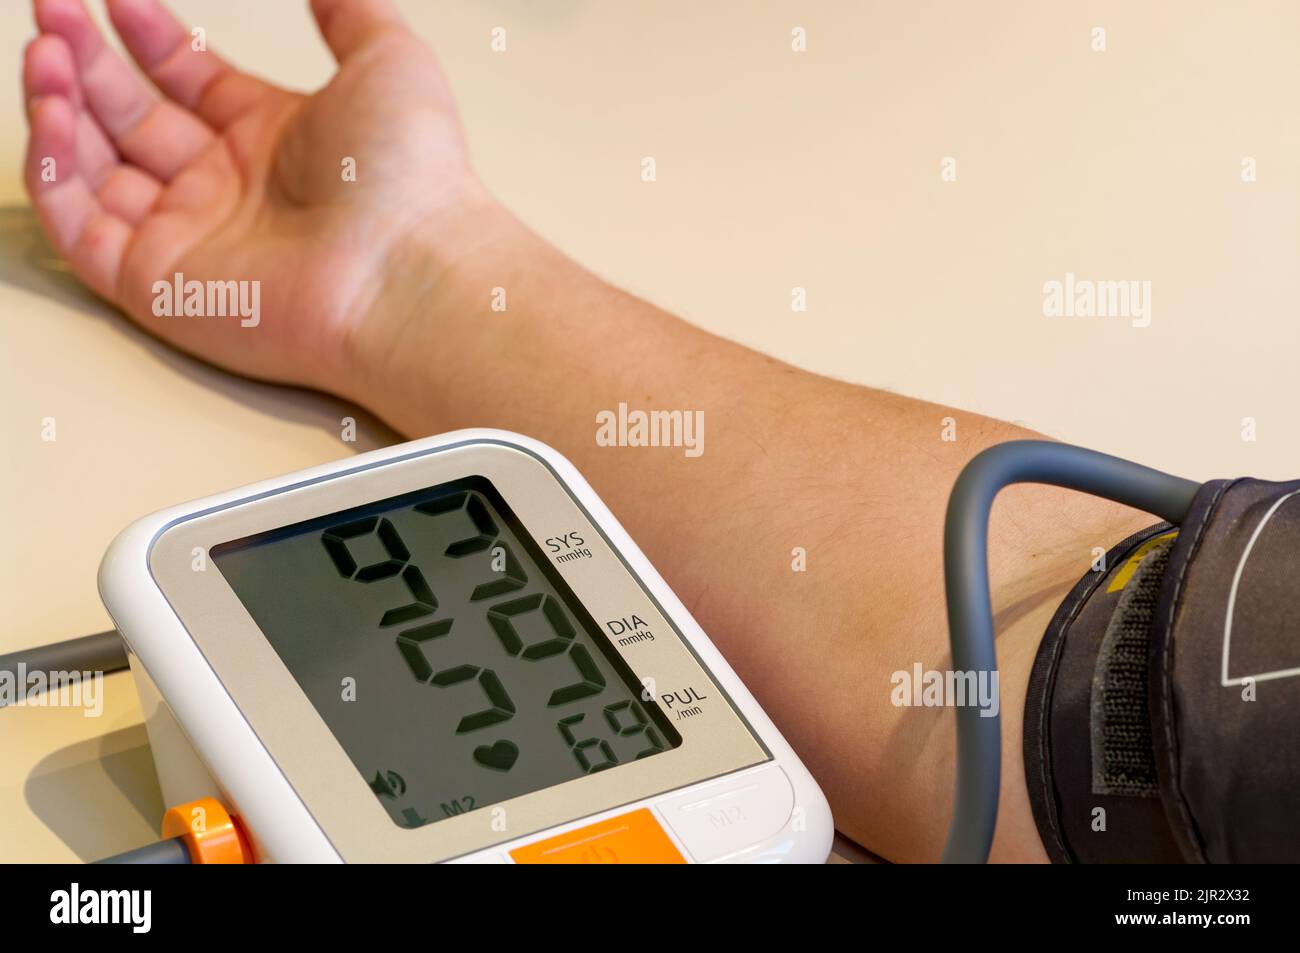 Blutdruckmessung in Nahaufnahme, Druck zu niedrig. Stockfoto